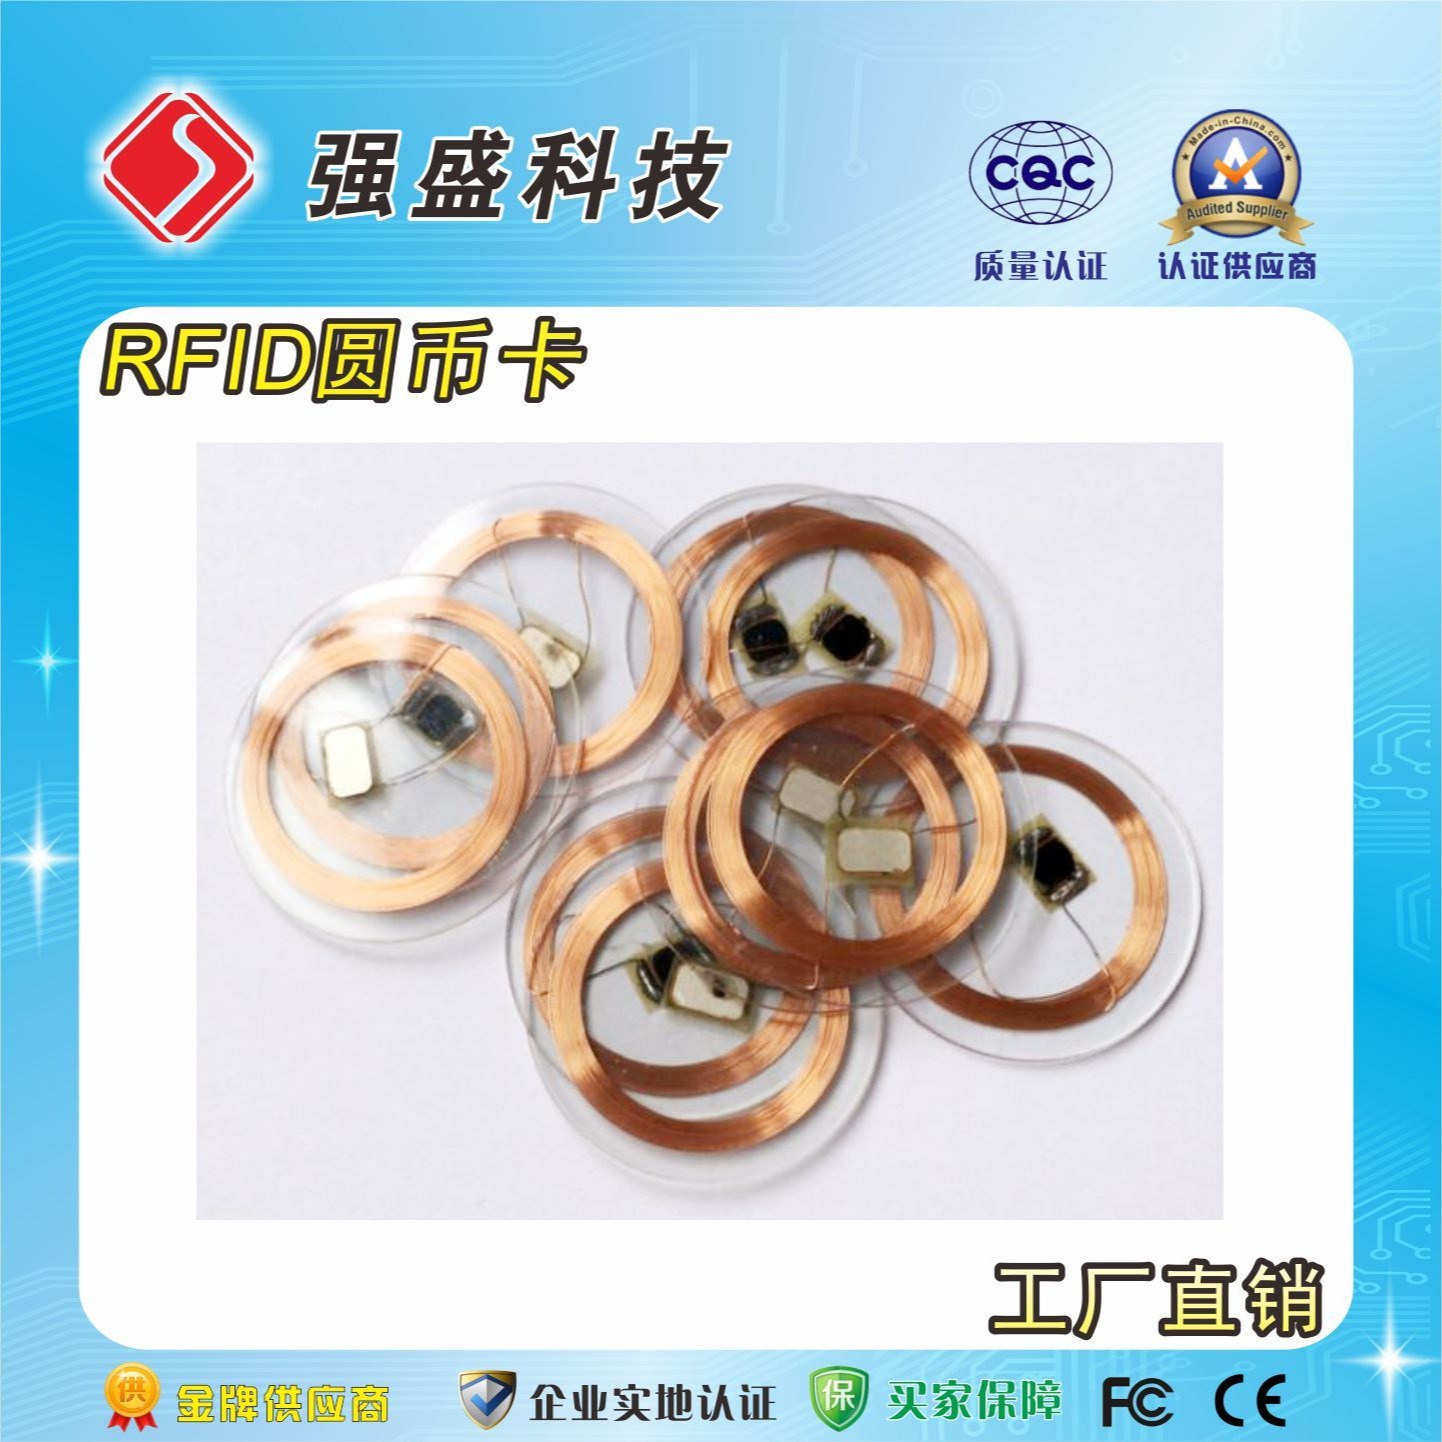 广州定制IC印章标签 公章植入式防伪芯片 RFID智能印章